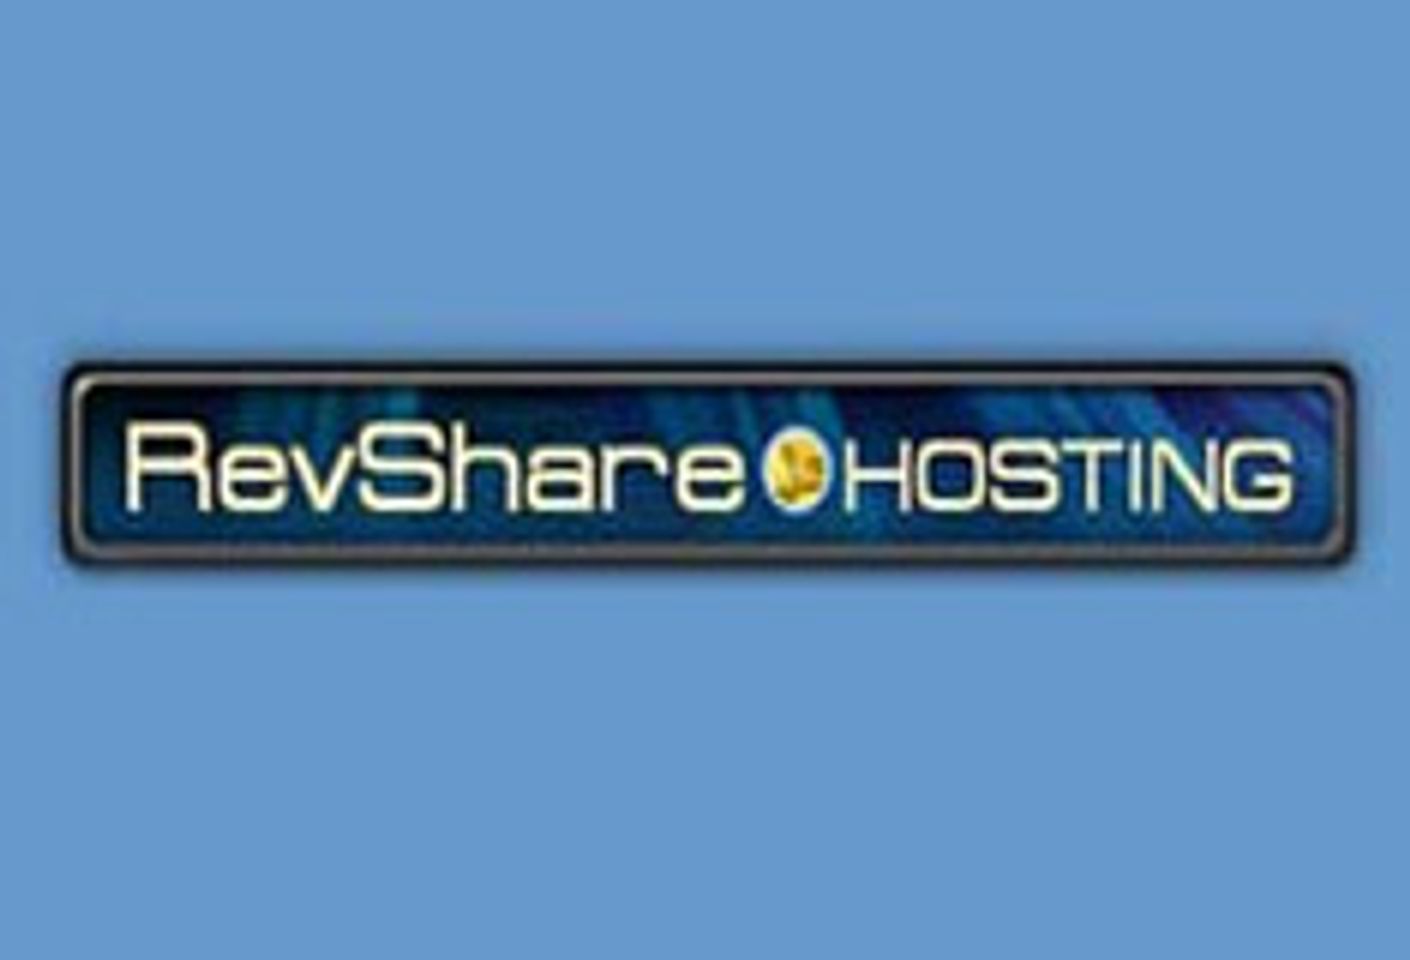 RevShareHosting.com Launches Blog Service